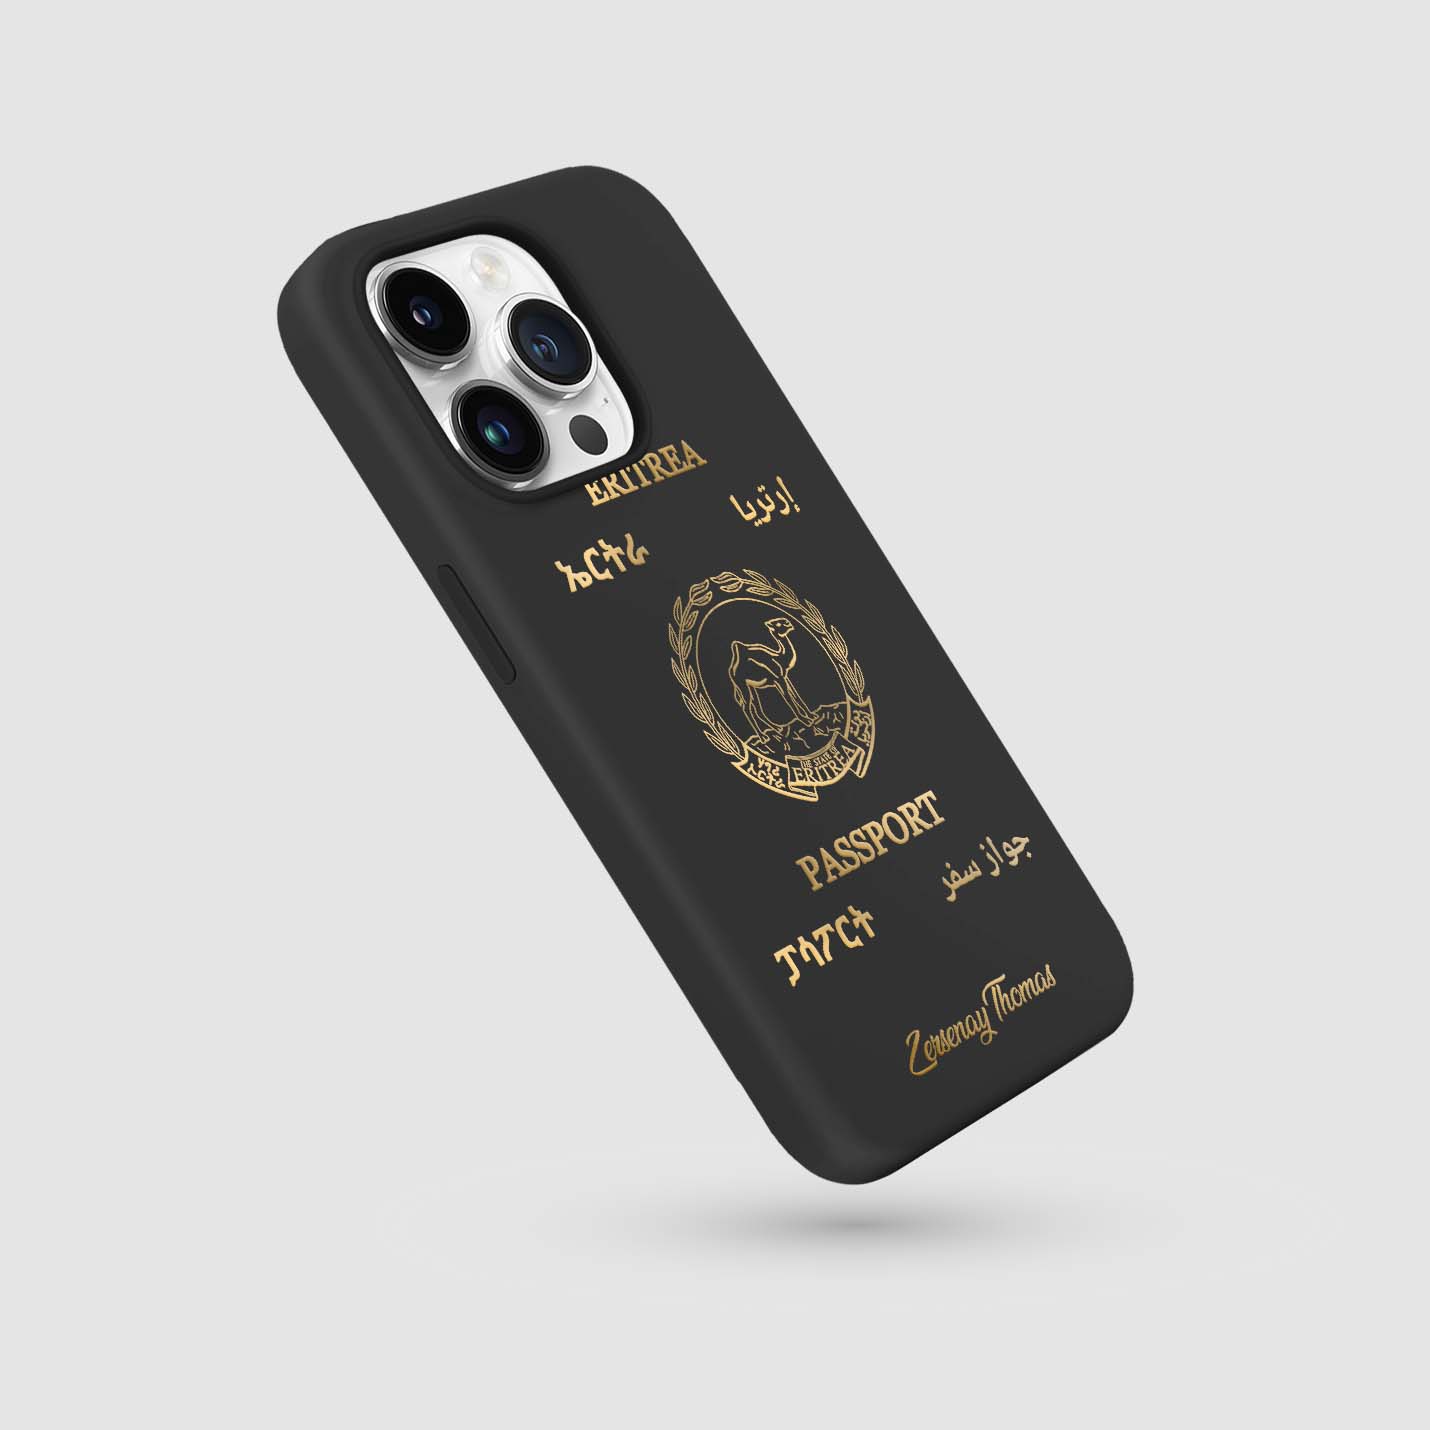 Handyhüllen mit Reisepass - Eritrea - 1instaphone